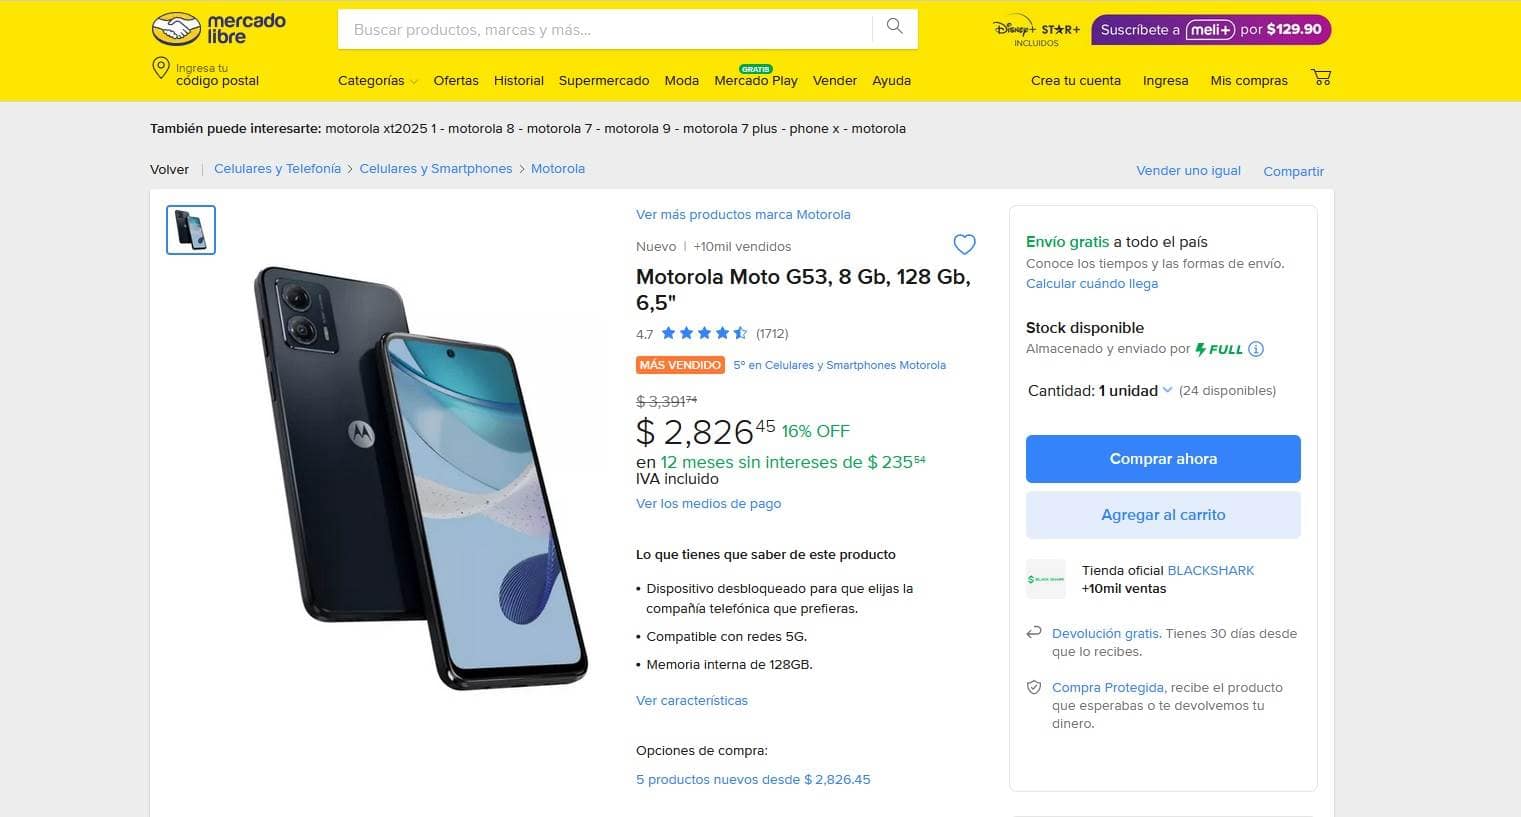 Smartphone Motorola Moto G53 con rebaja en Mercado Libre.